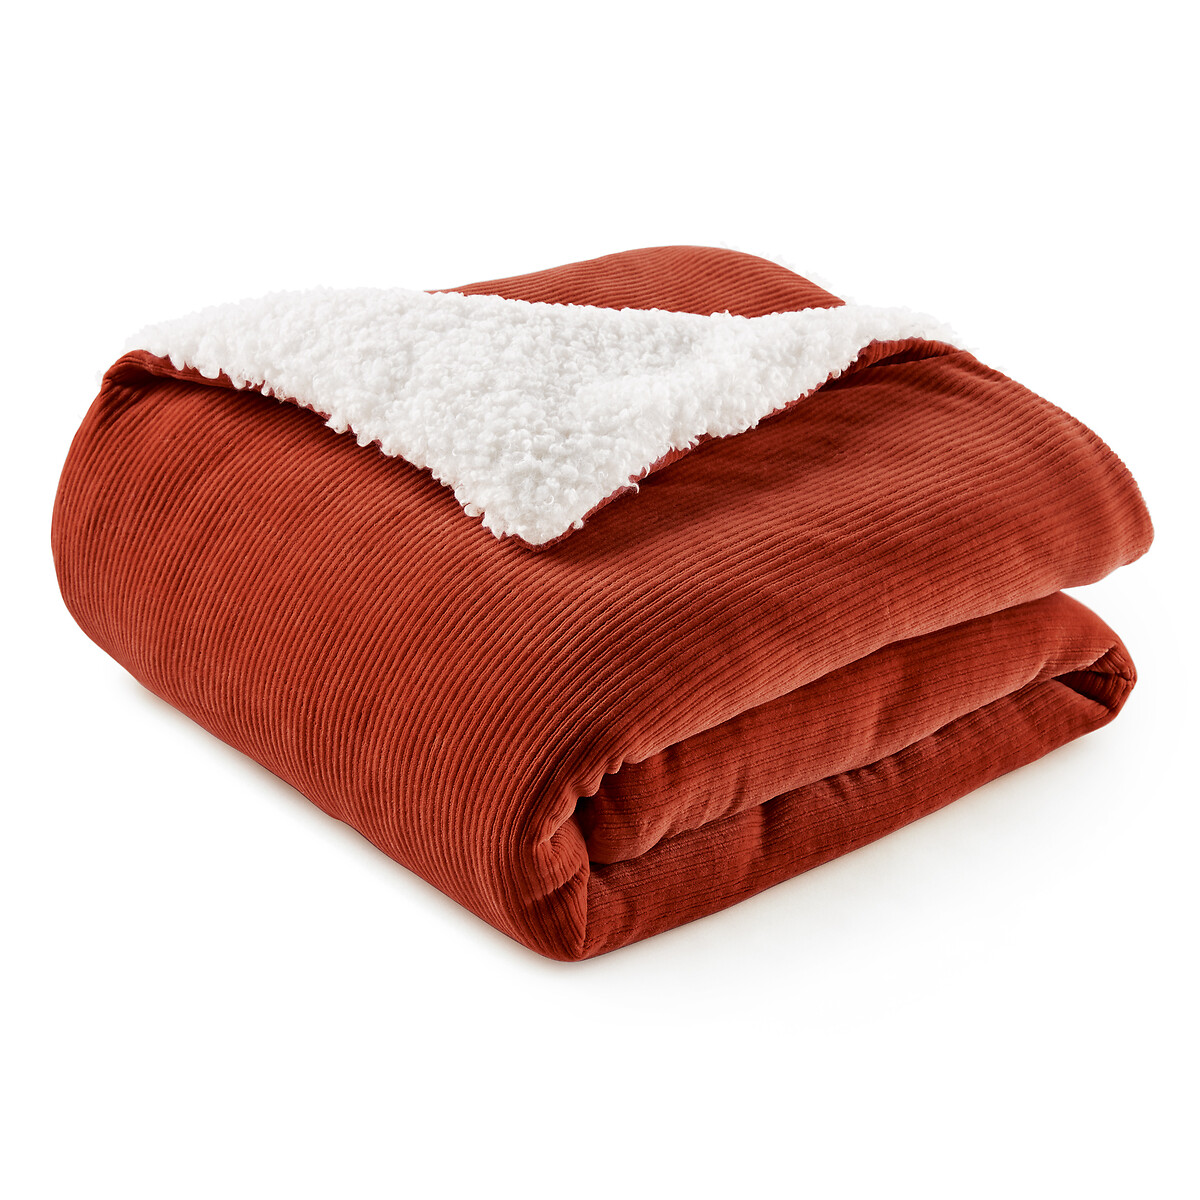 Одеяло LaRedoute Ouate Velours 90 x 190 см оранжевый, размер 90 x 190 см - фото 3